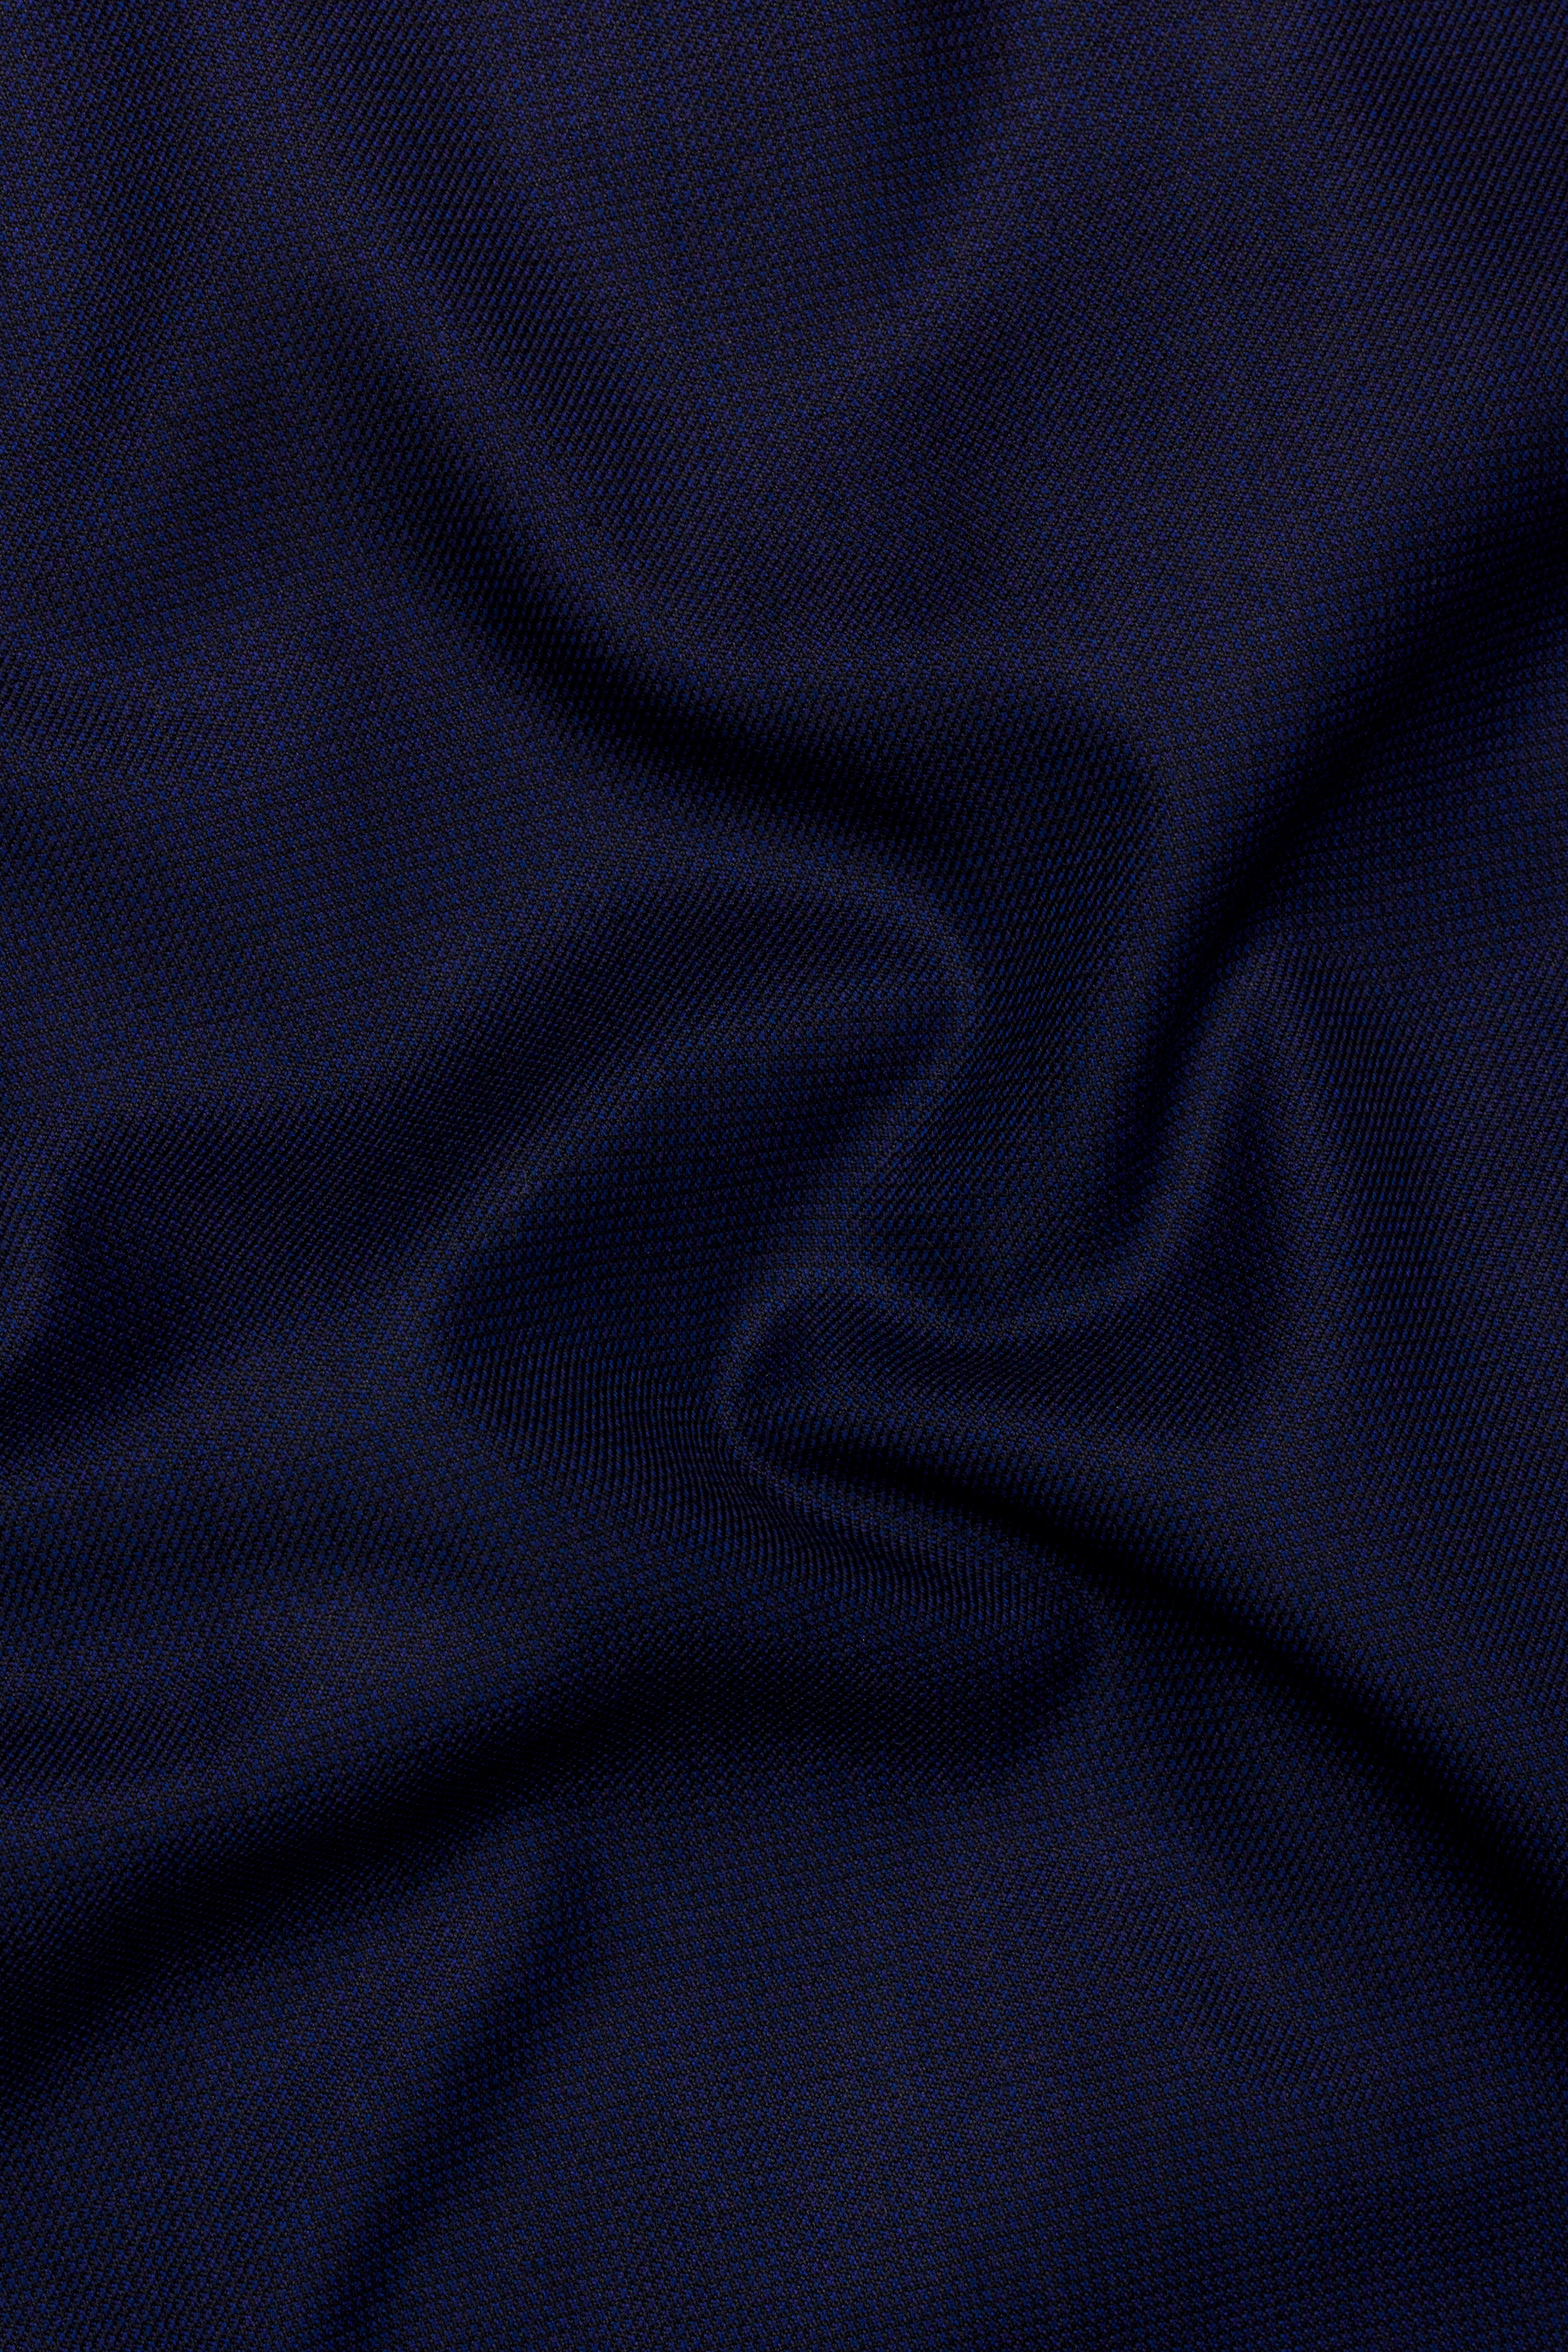 Midnight Navy Blue Wool Rich Pant T2753-28, T2753-30, T2753-32, T2753-34, T2753-36, T2753-38, T2753-40, T2753-42, T2753-44